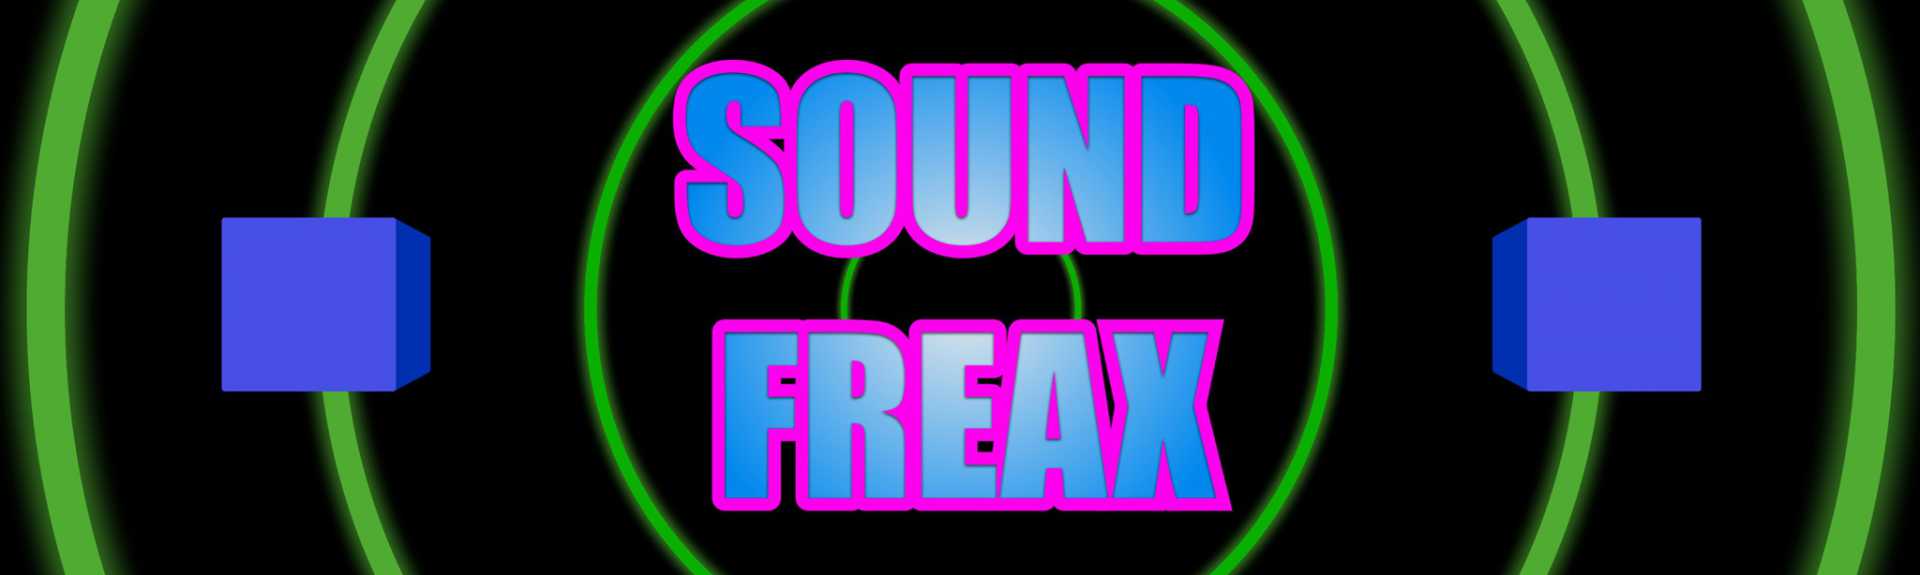 SOUND FREAX